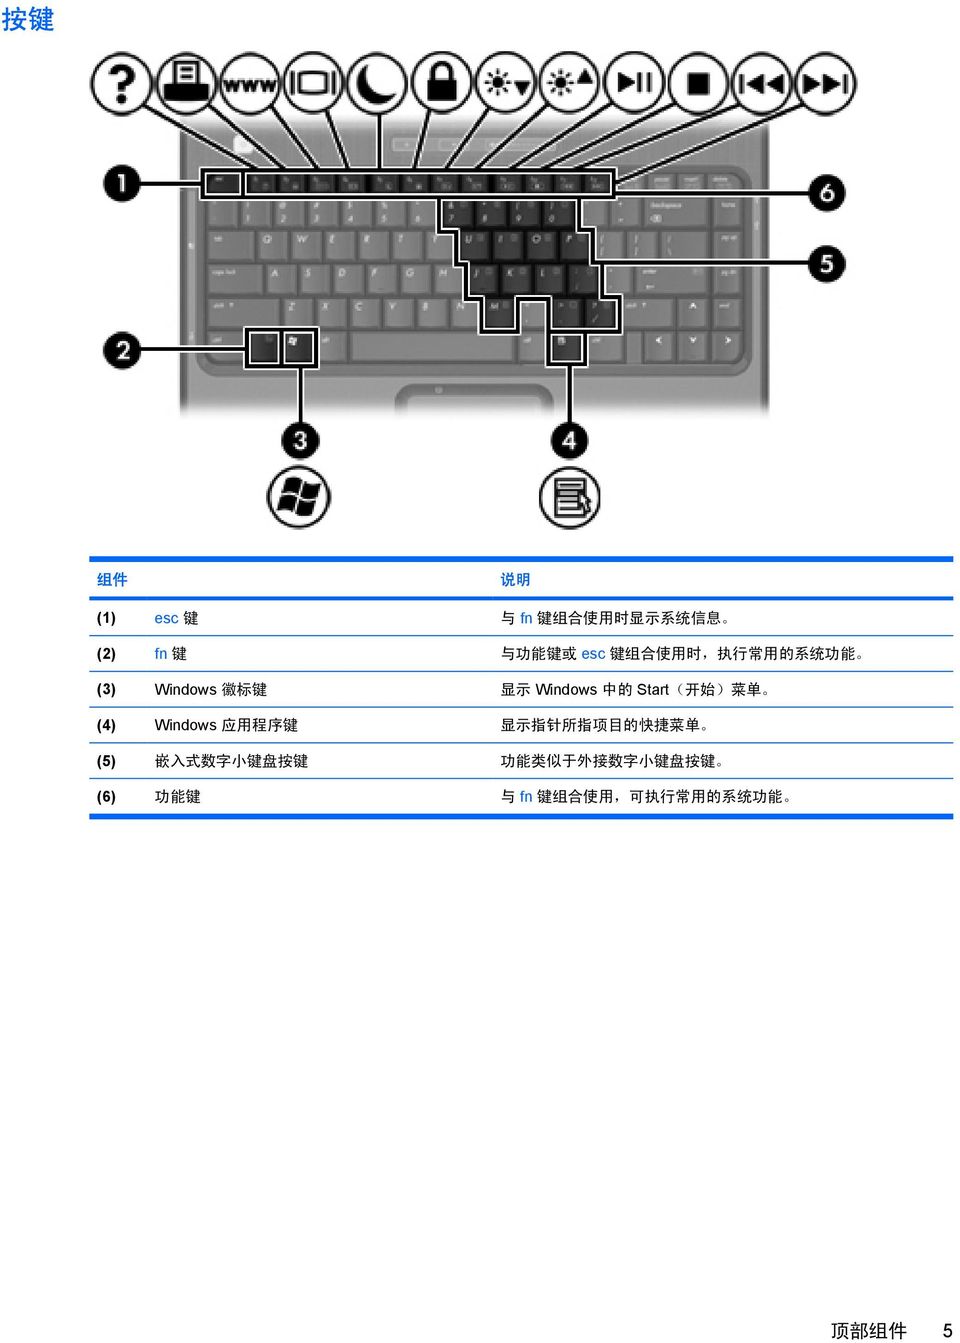 (4) Windows 应 用 程 序 键 显 示 指 针 所 指 项 目 的 快 捷 菜 单 (5) 嵌 入 式 数 字 小 键 盘 按 键 功 能 类